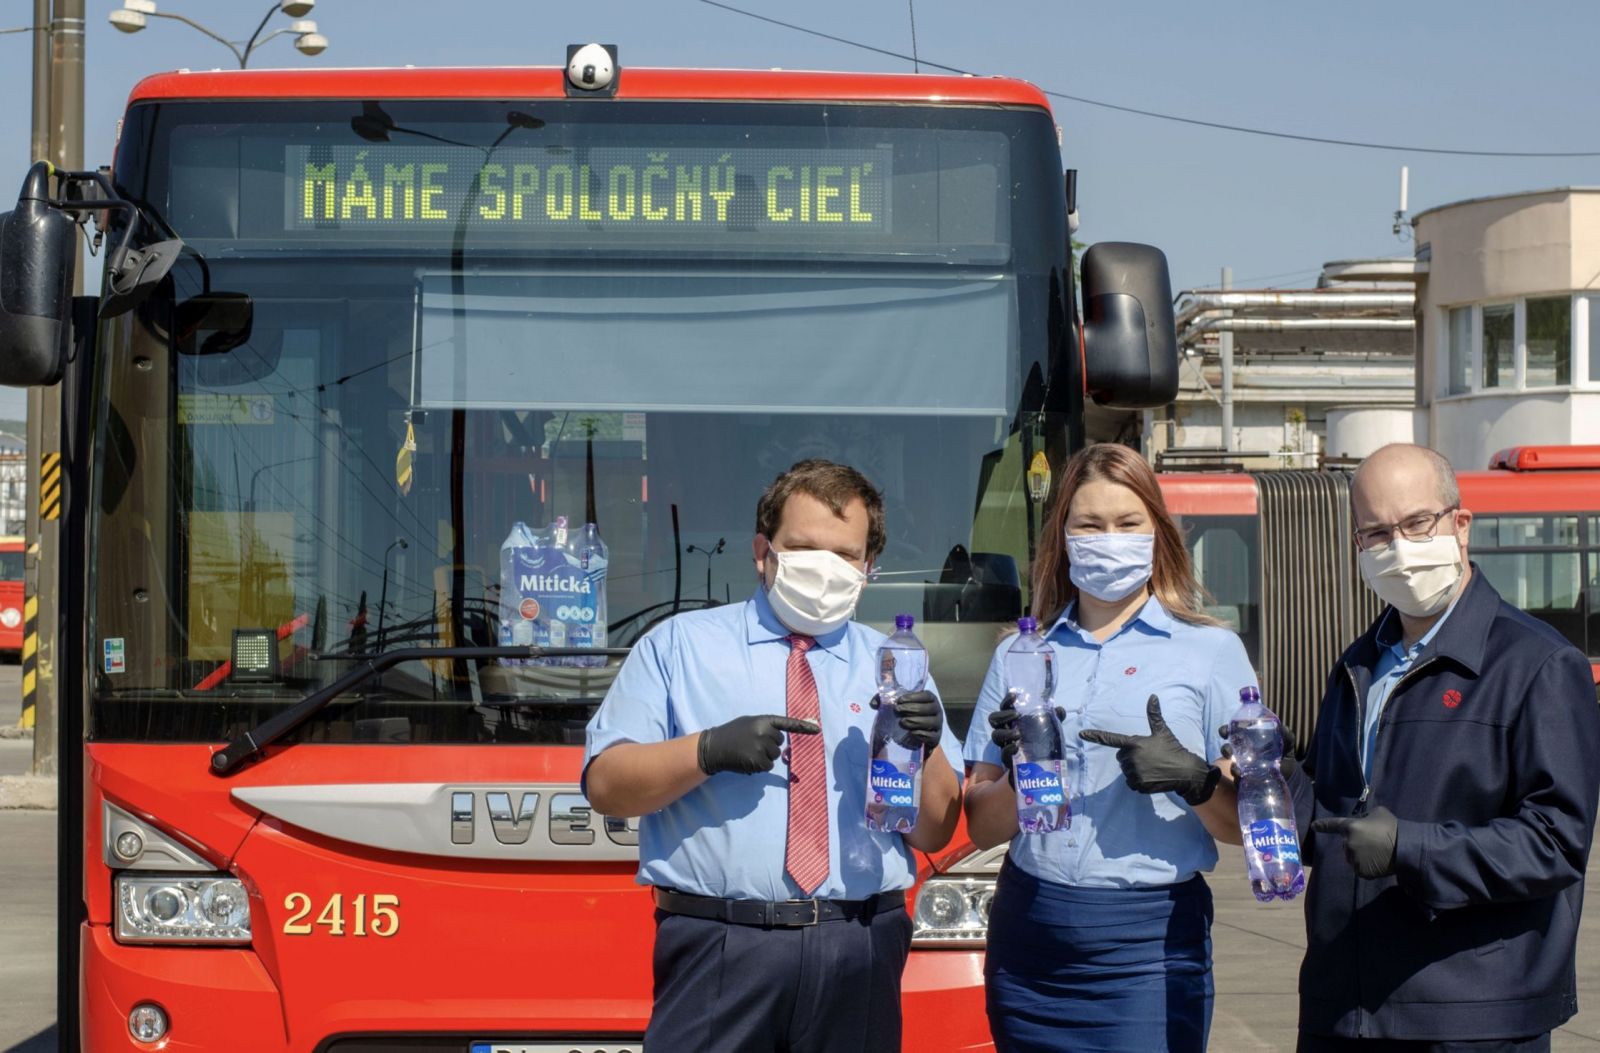 Ako je možné, že bratislavská MHD poskytuje cestujúcim ešte väčší komfort? Vodičom pomáha aj dodávka pitného režimu